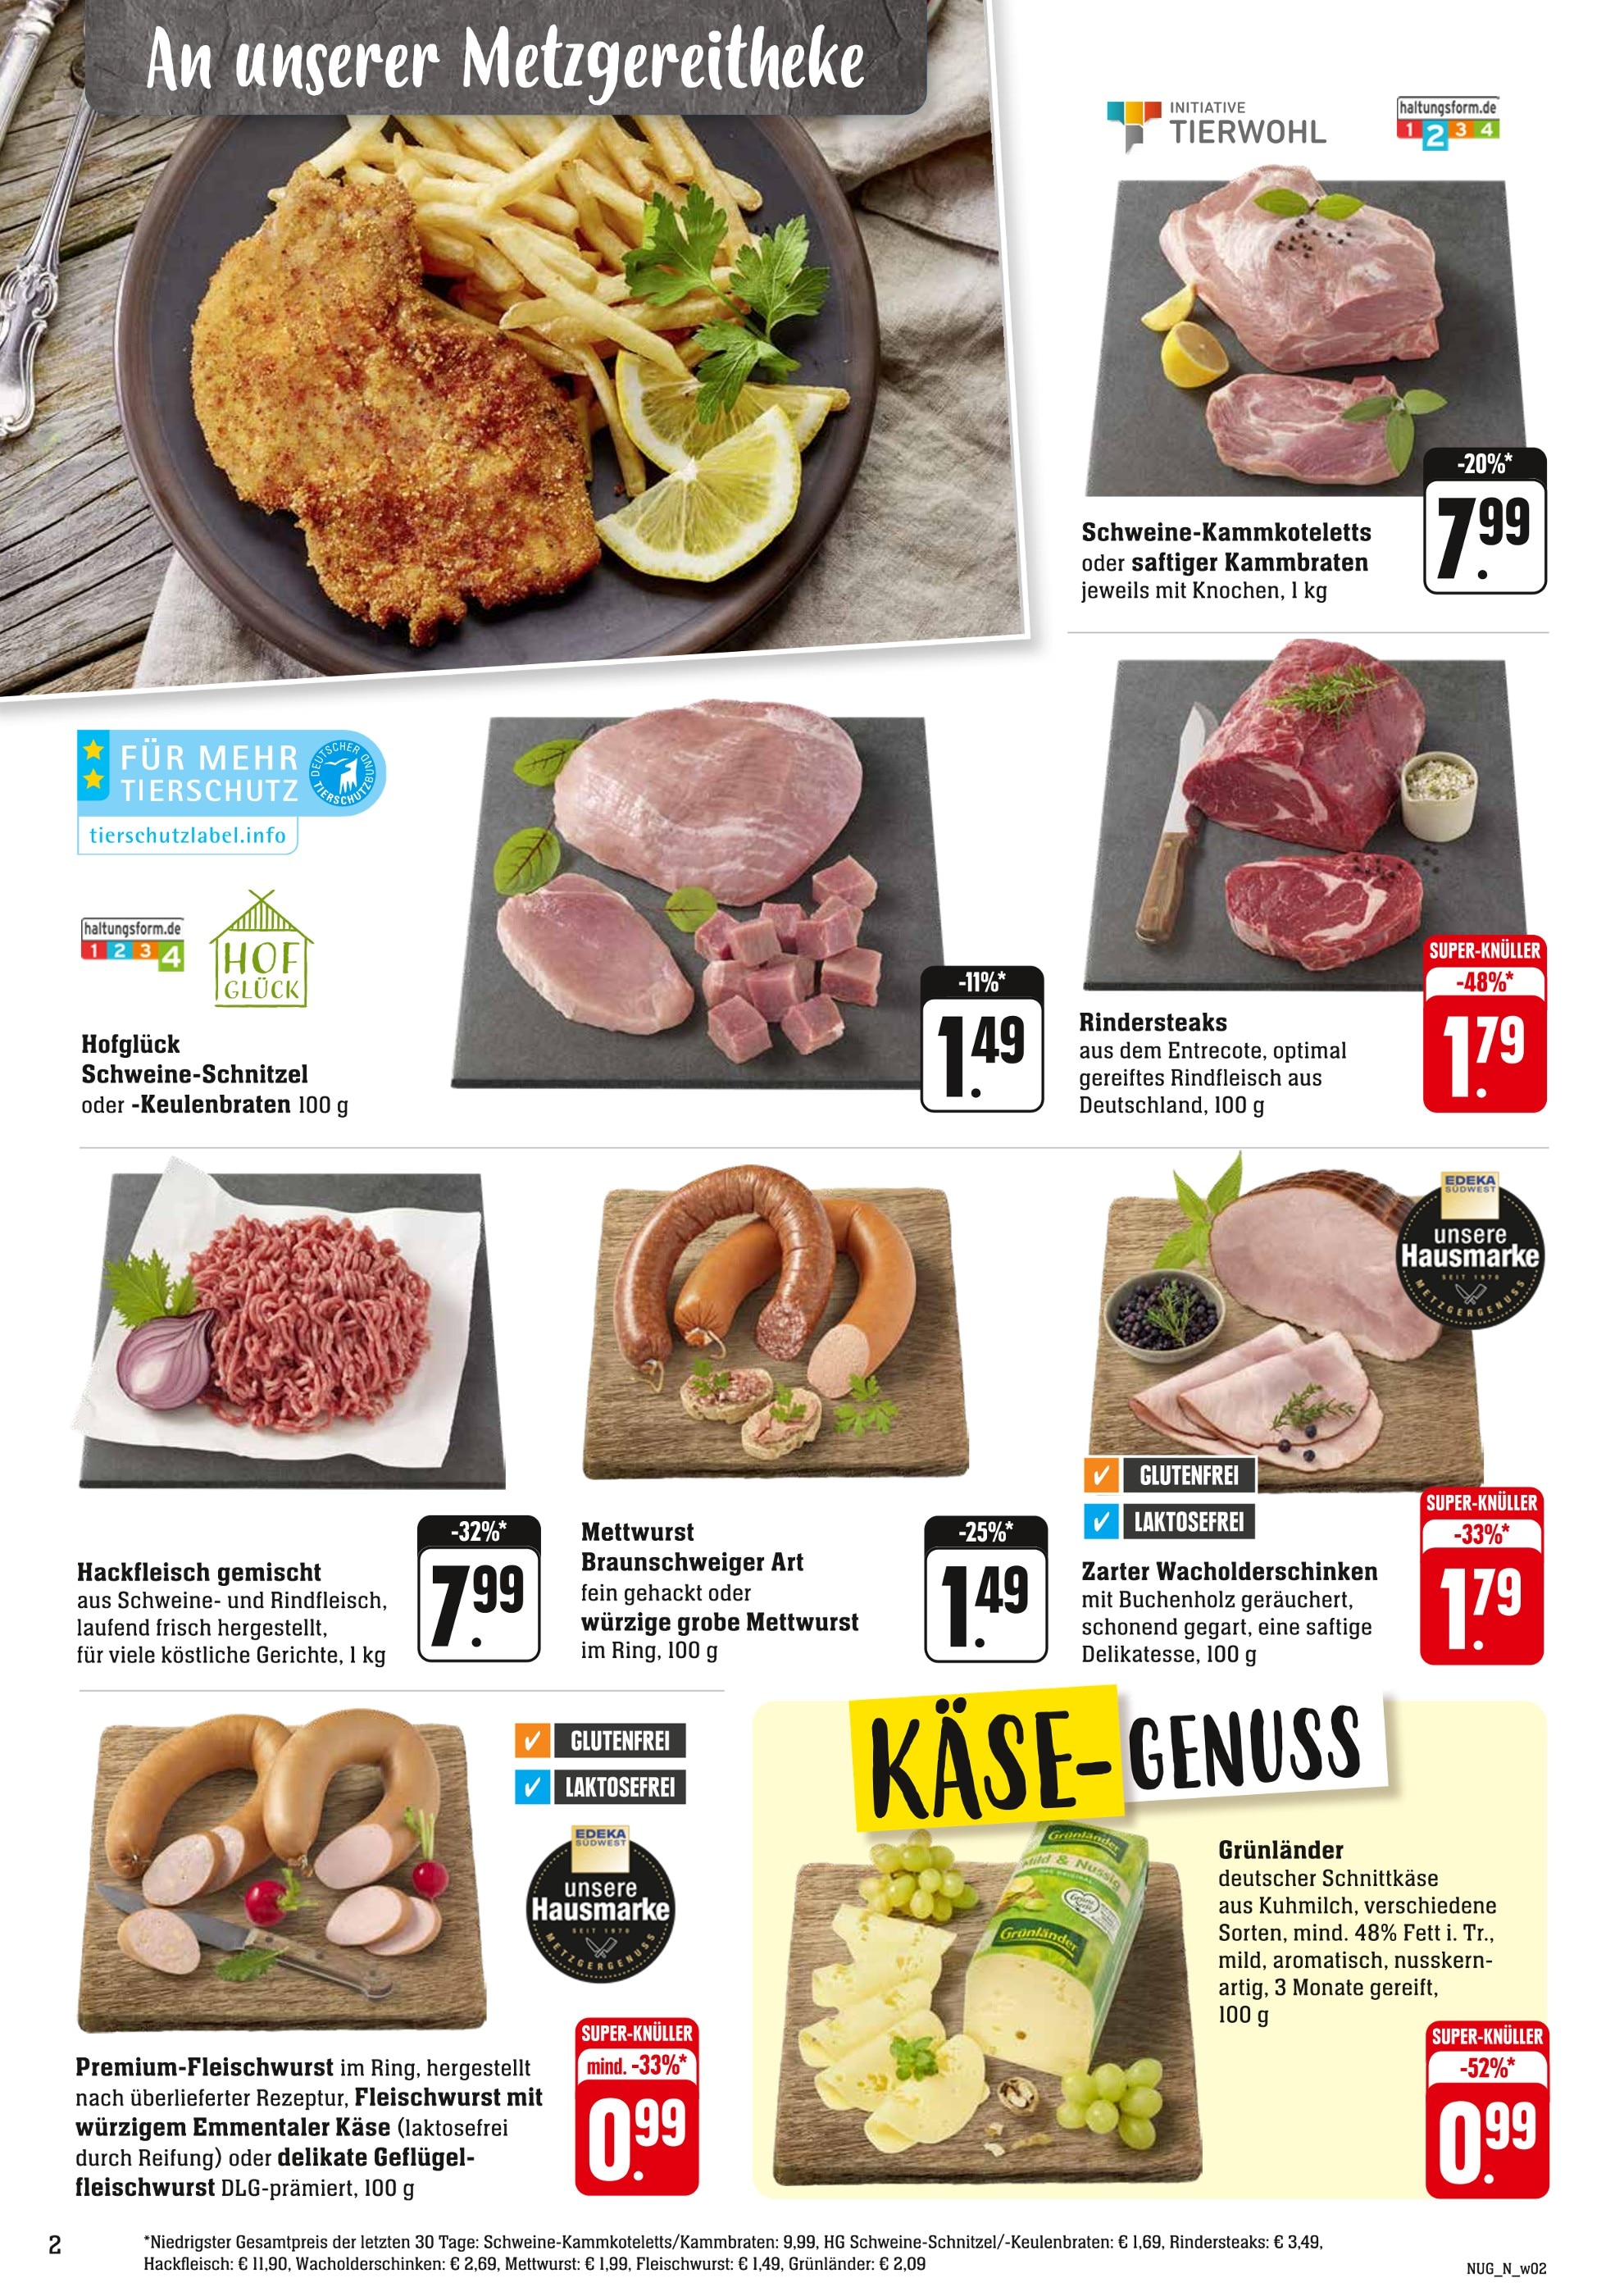 Schweineschnitzel kaufen in Mannheim - günstige Angebote in Mannheim